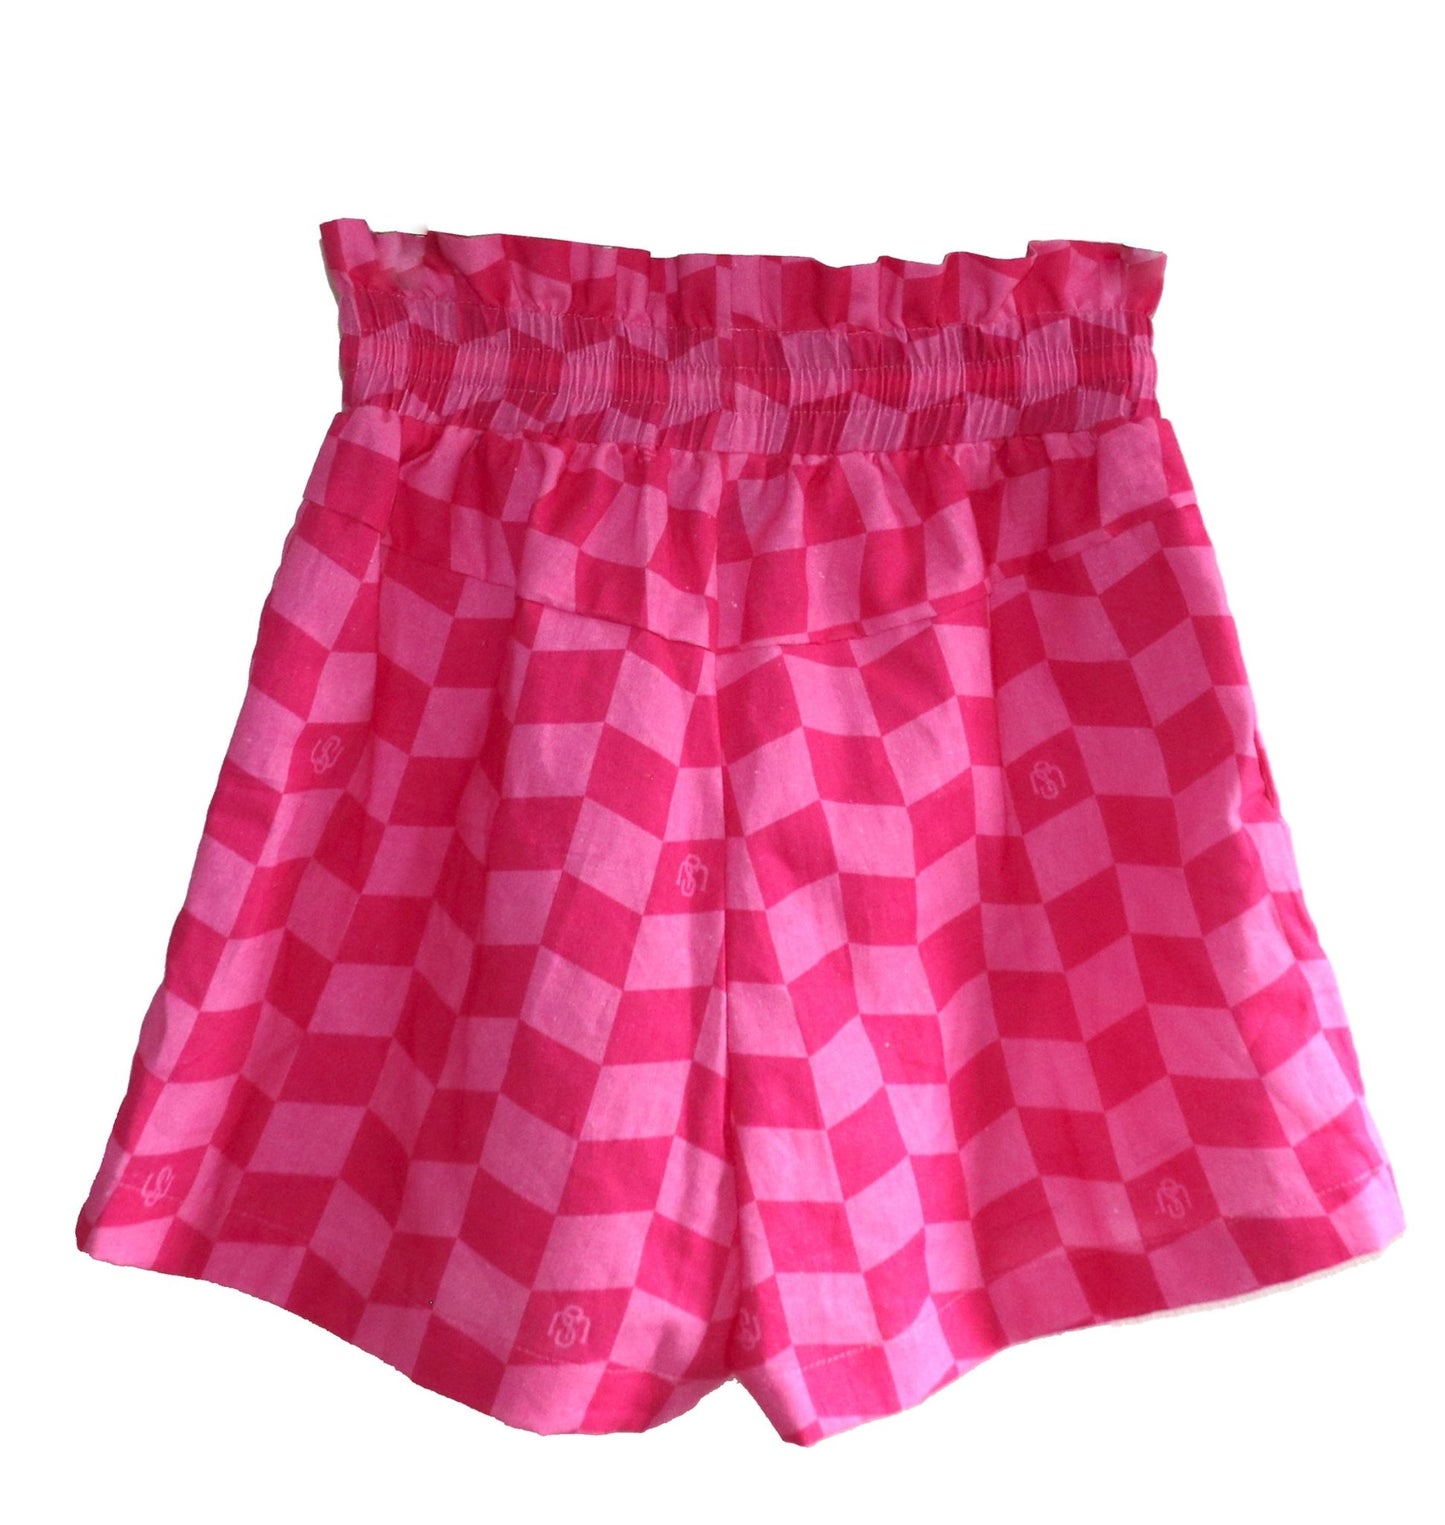 Iti iti Shorts - Pink Geometric - Sweepstake Winners™